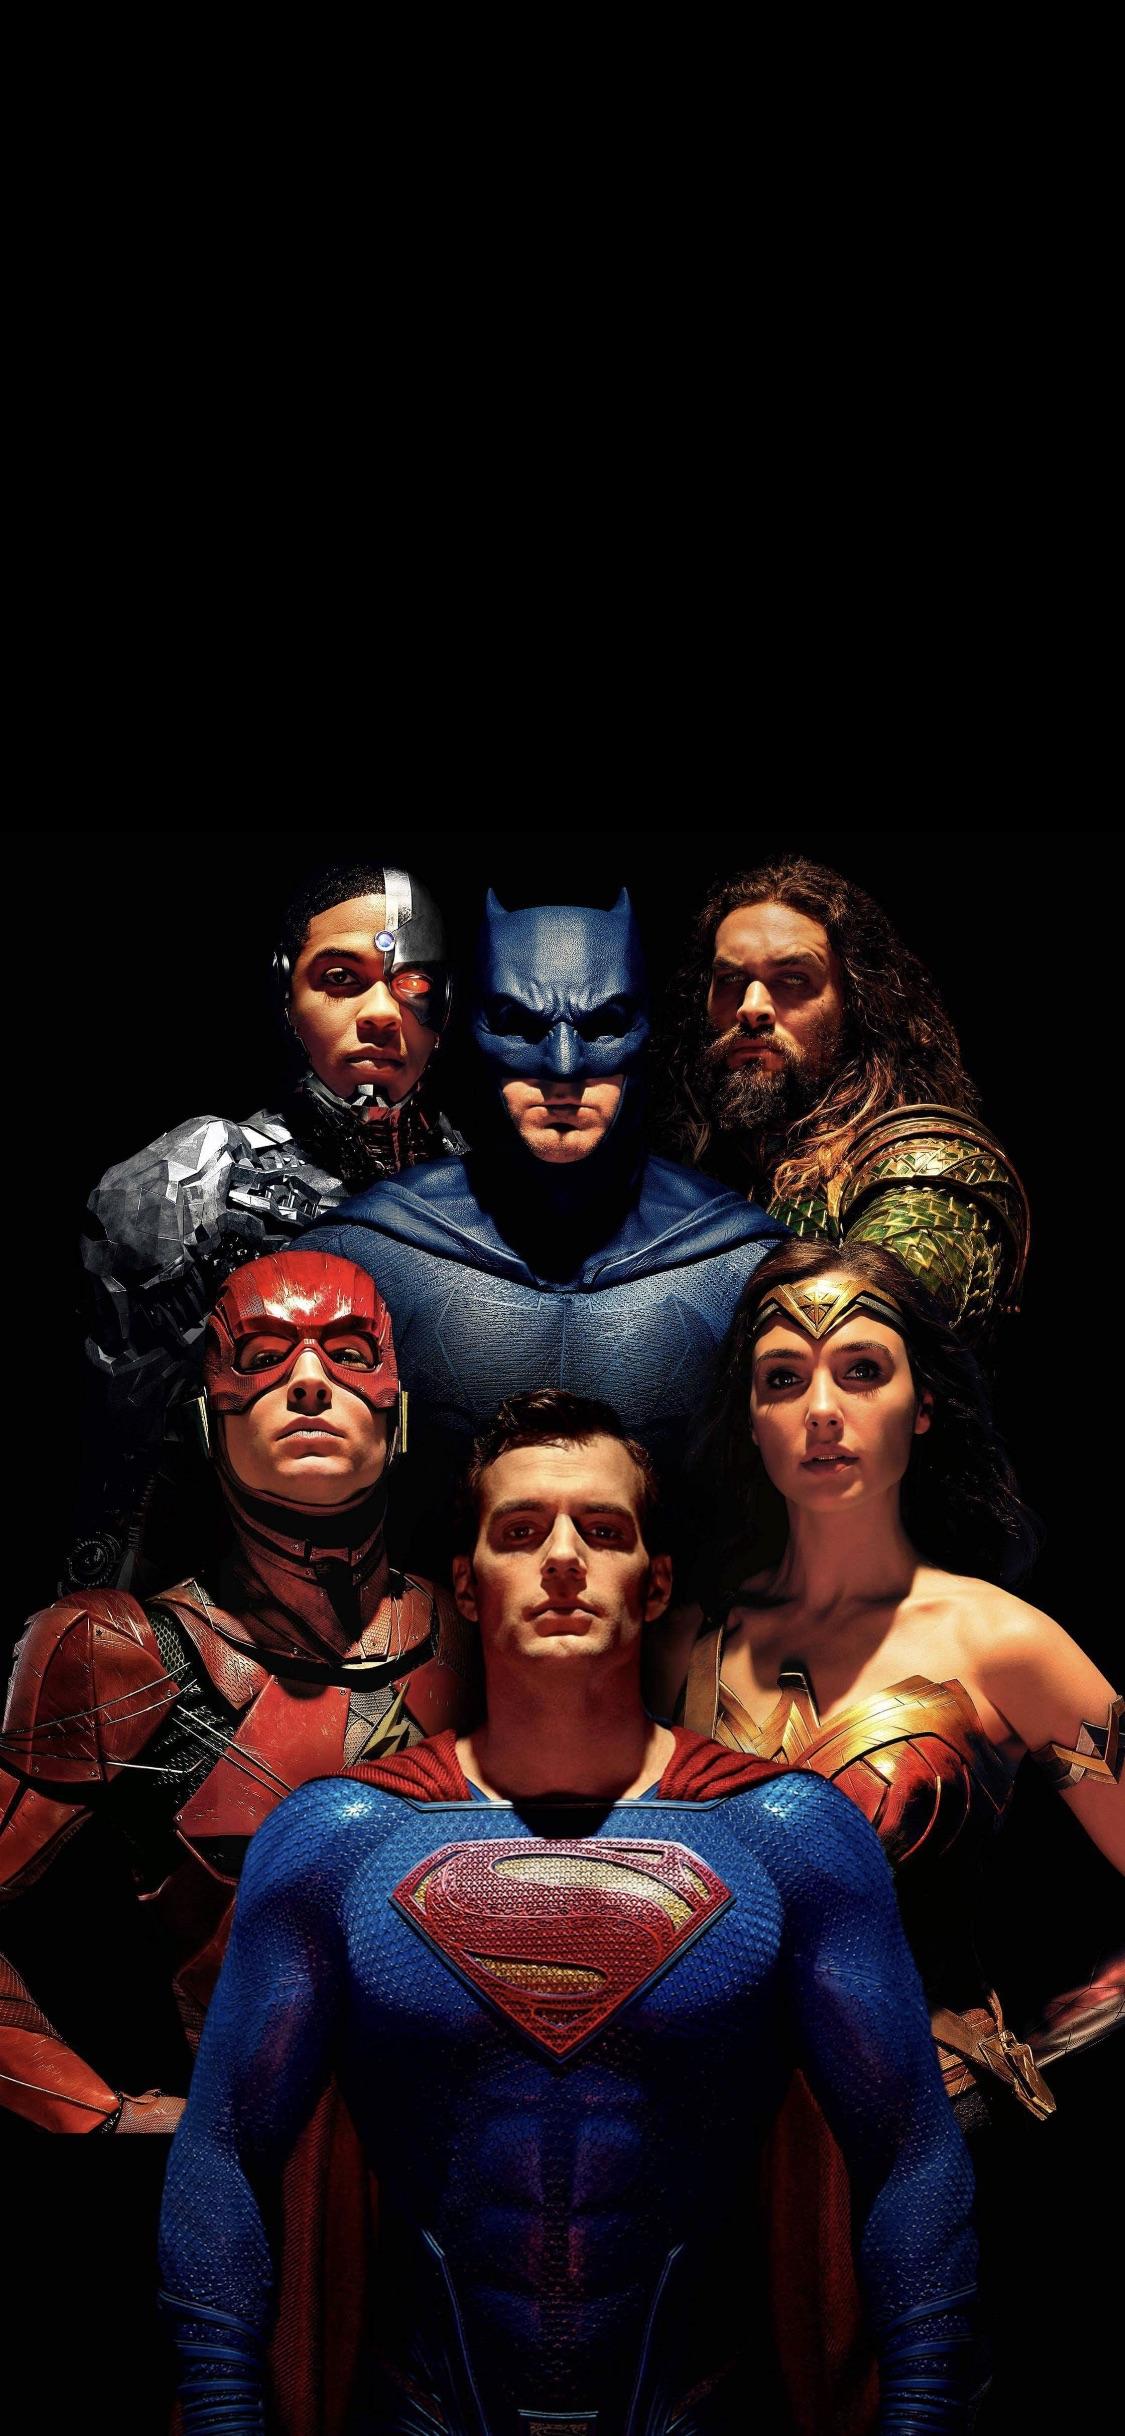 fond d'écran de justice league iphone,super héros,héros,personnage fictif,superman,ligue de justice